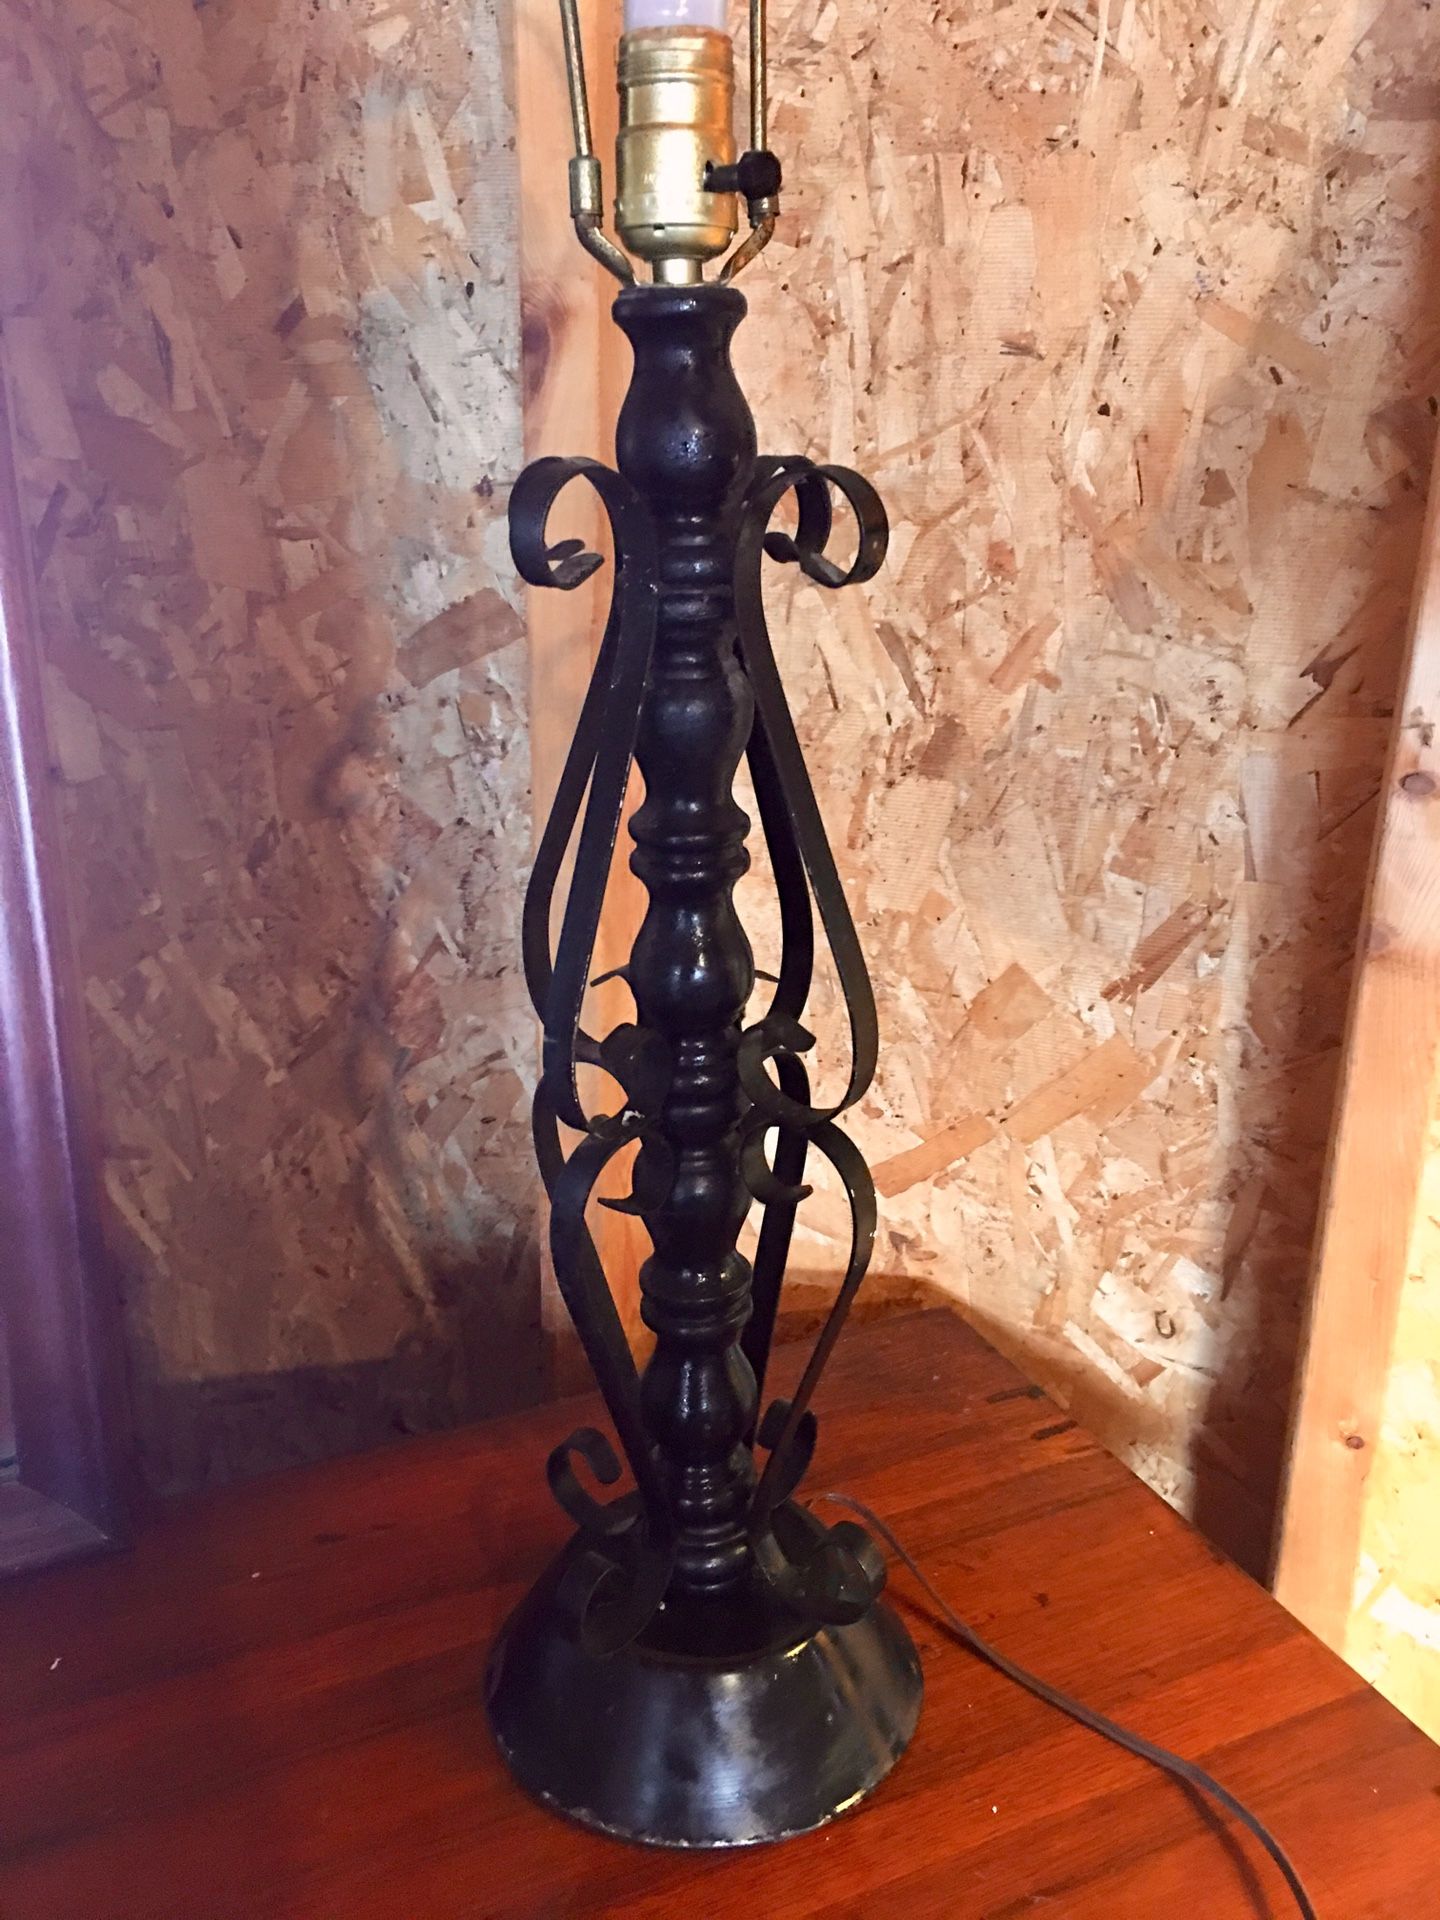 Black antique lamp 😈